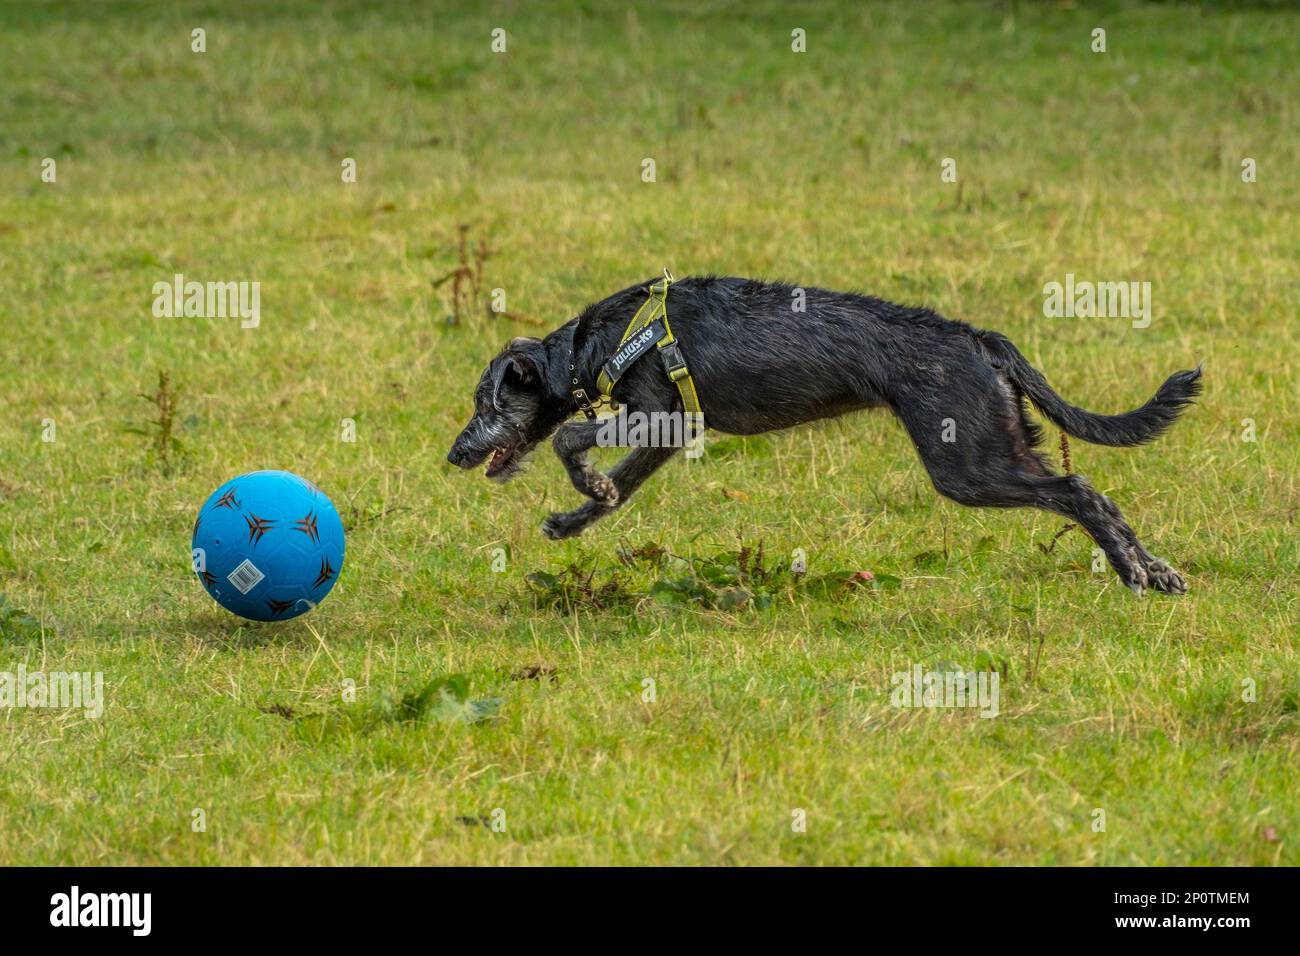 Ballon de football pour chien - ABC chiens